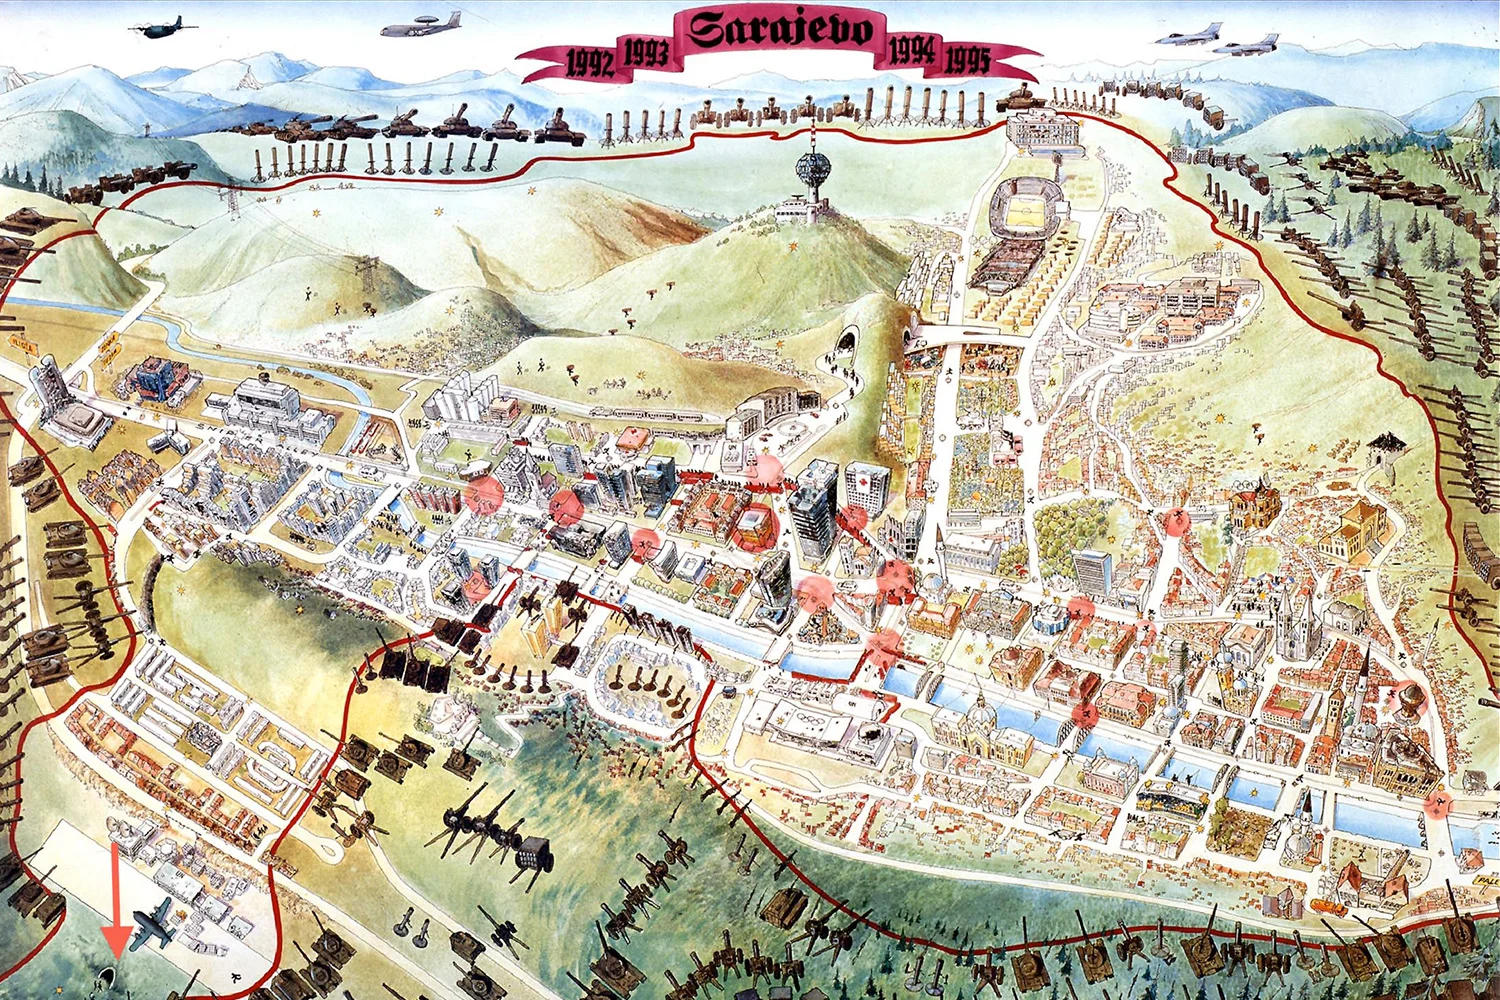 Ilustracija opsade Sarajeva - U noći sa 4. na 5. april 1992. godine počela opsada Sarajeva